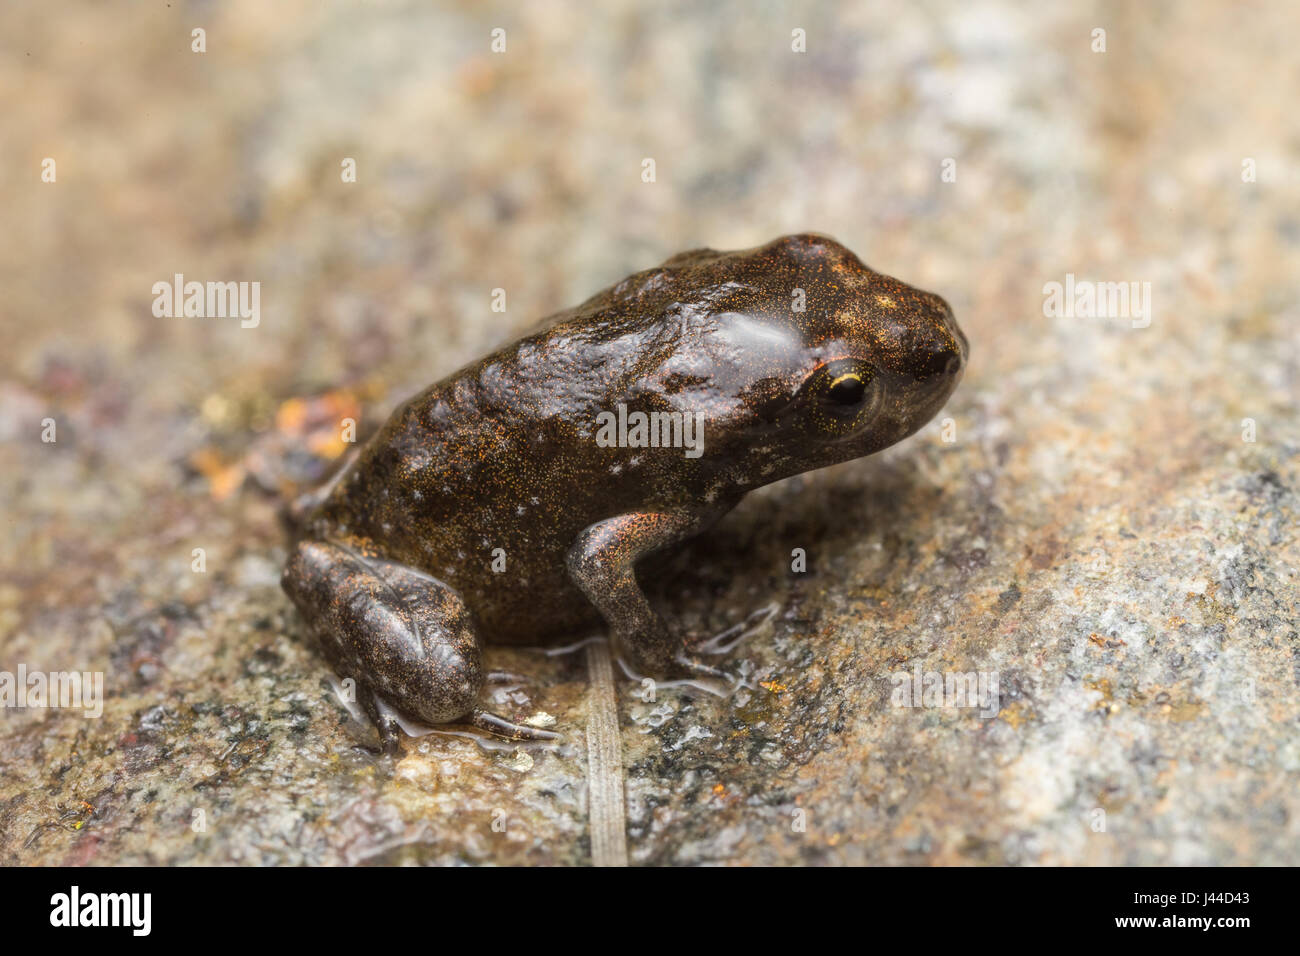 Einen winzigen Frosch, 1cm groß, aus den letzten Metamorphose, ein paar  Tage von der Kaulquappe zum Frosch Stockfotografie - Alamy